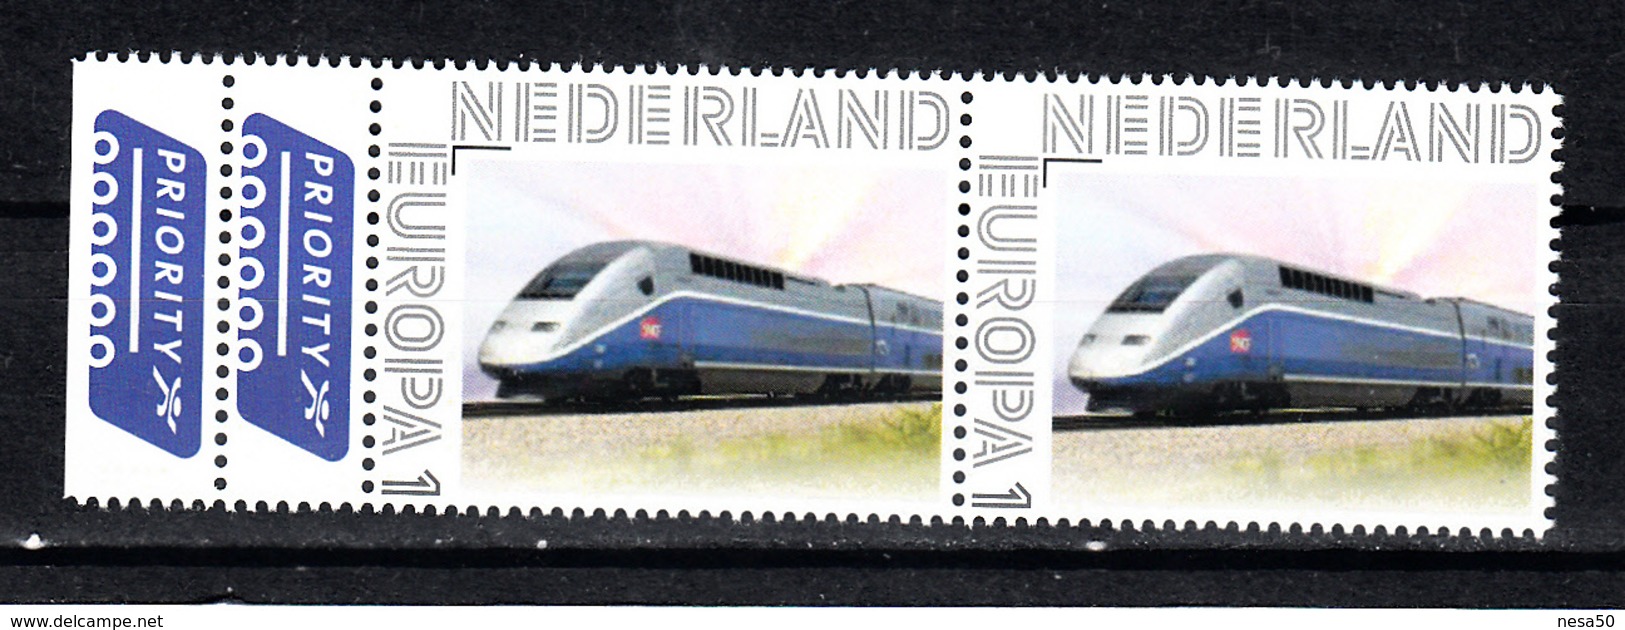 Nederland Persoonlijke Europa Zegel: Trein, High Speed Train - Treinen